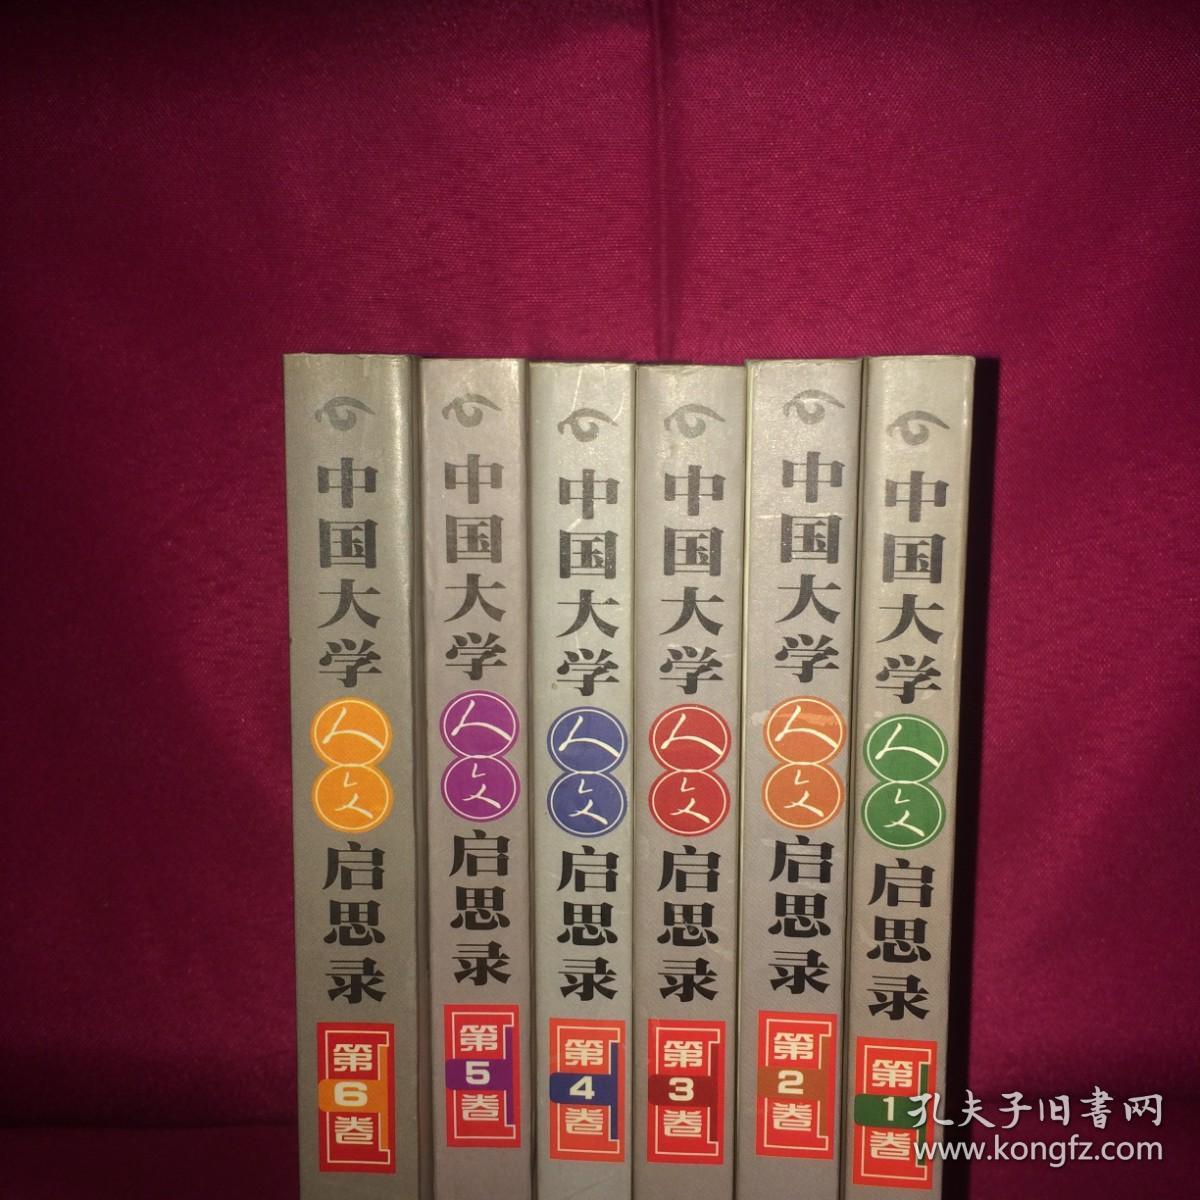 中国大学人文启思录 123456 六卷全 私人藏书 呵护备至